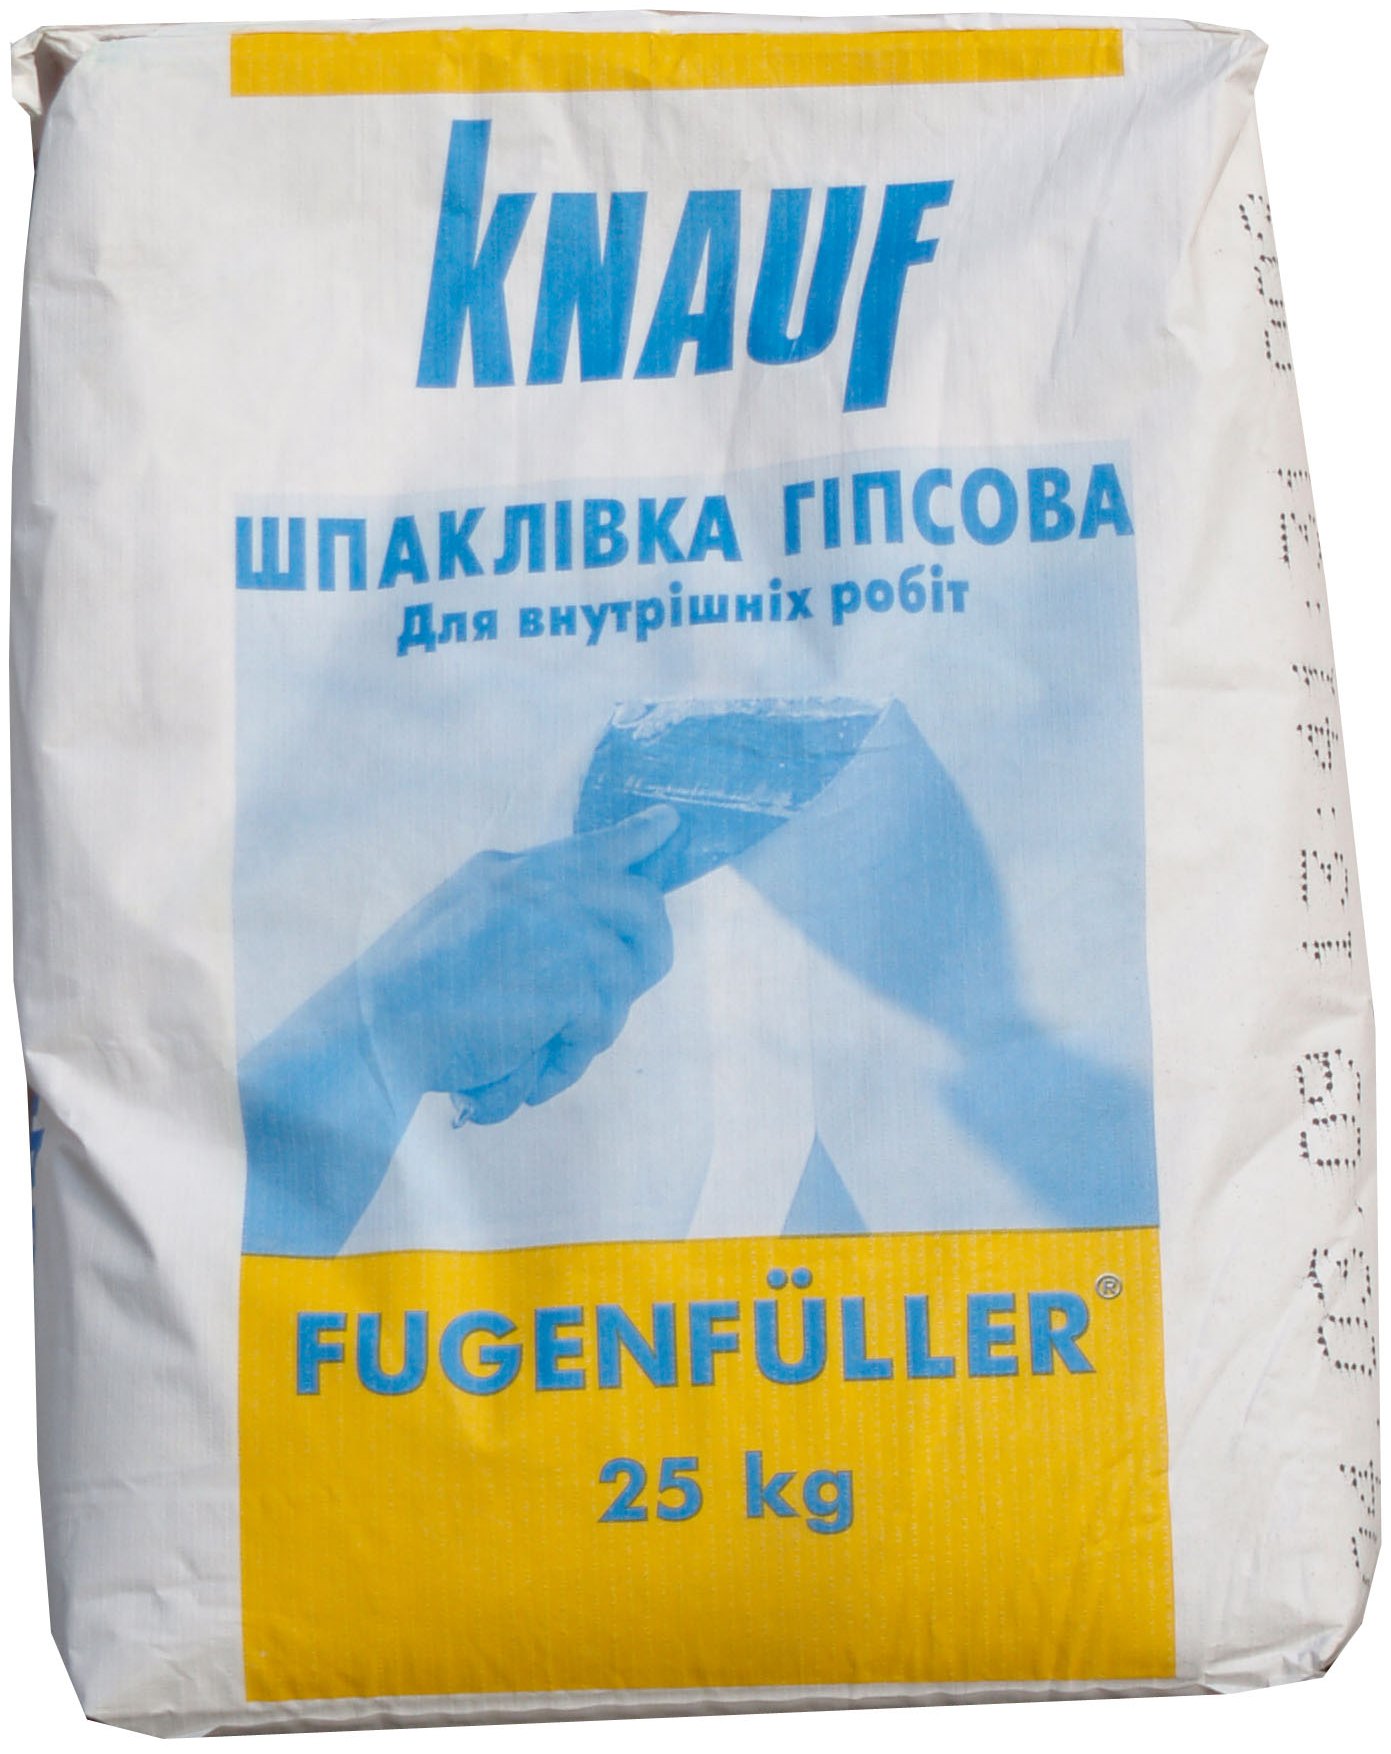 Сухая гипсовая смесь Фугенфюллер поставляется в 25-килограммовых упаковках.